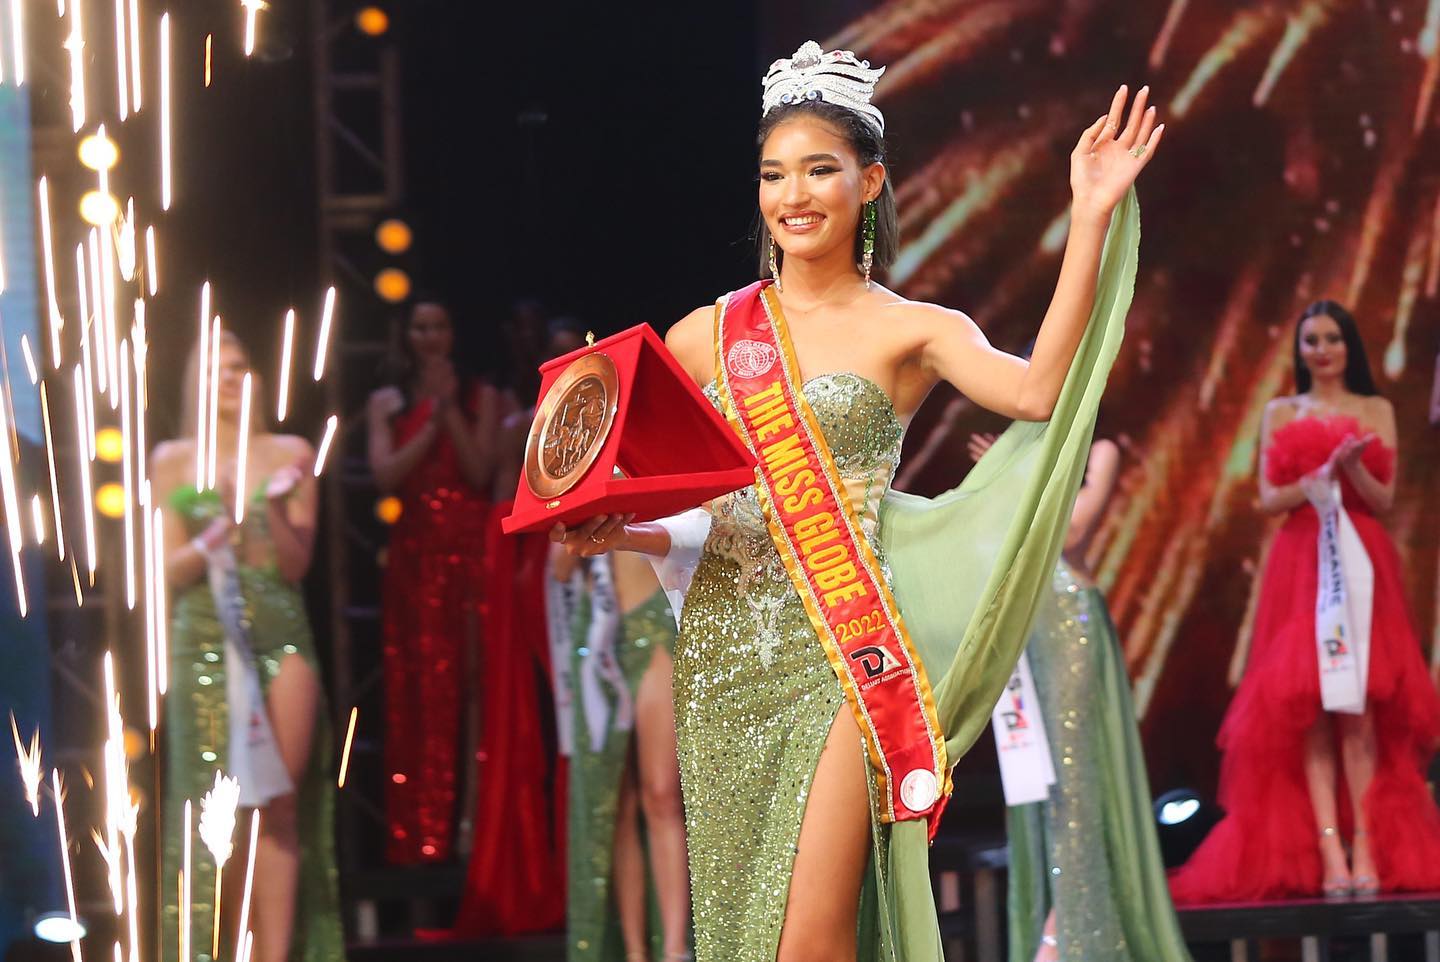 Hoa hậu Hoàn cầu: Cuộc thi sắc đẹp có lịch sử lâu đời với 3 phiên bản đặc biệt - Ảnh 1.